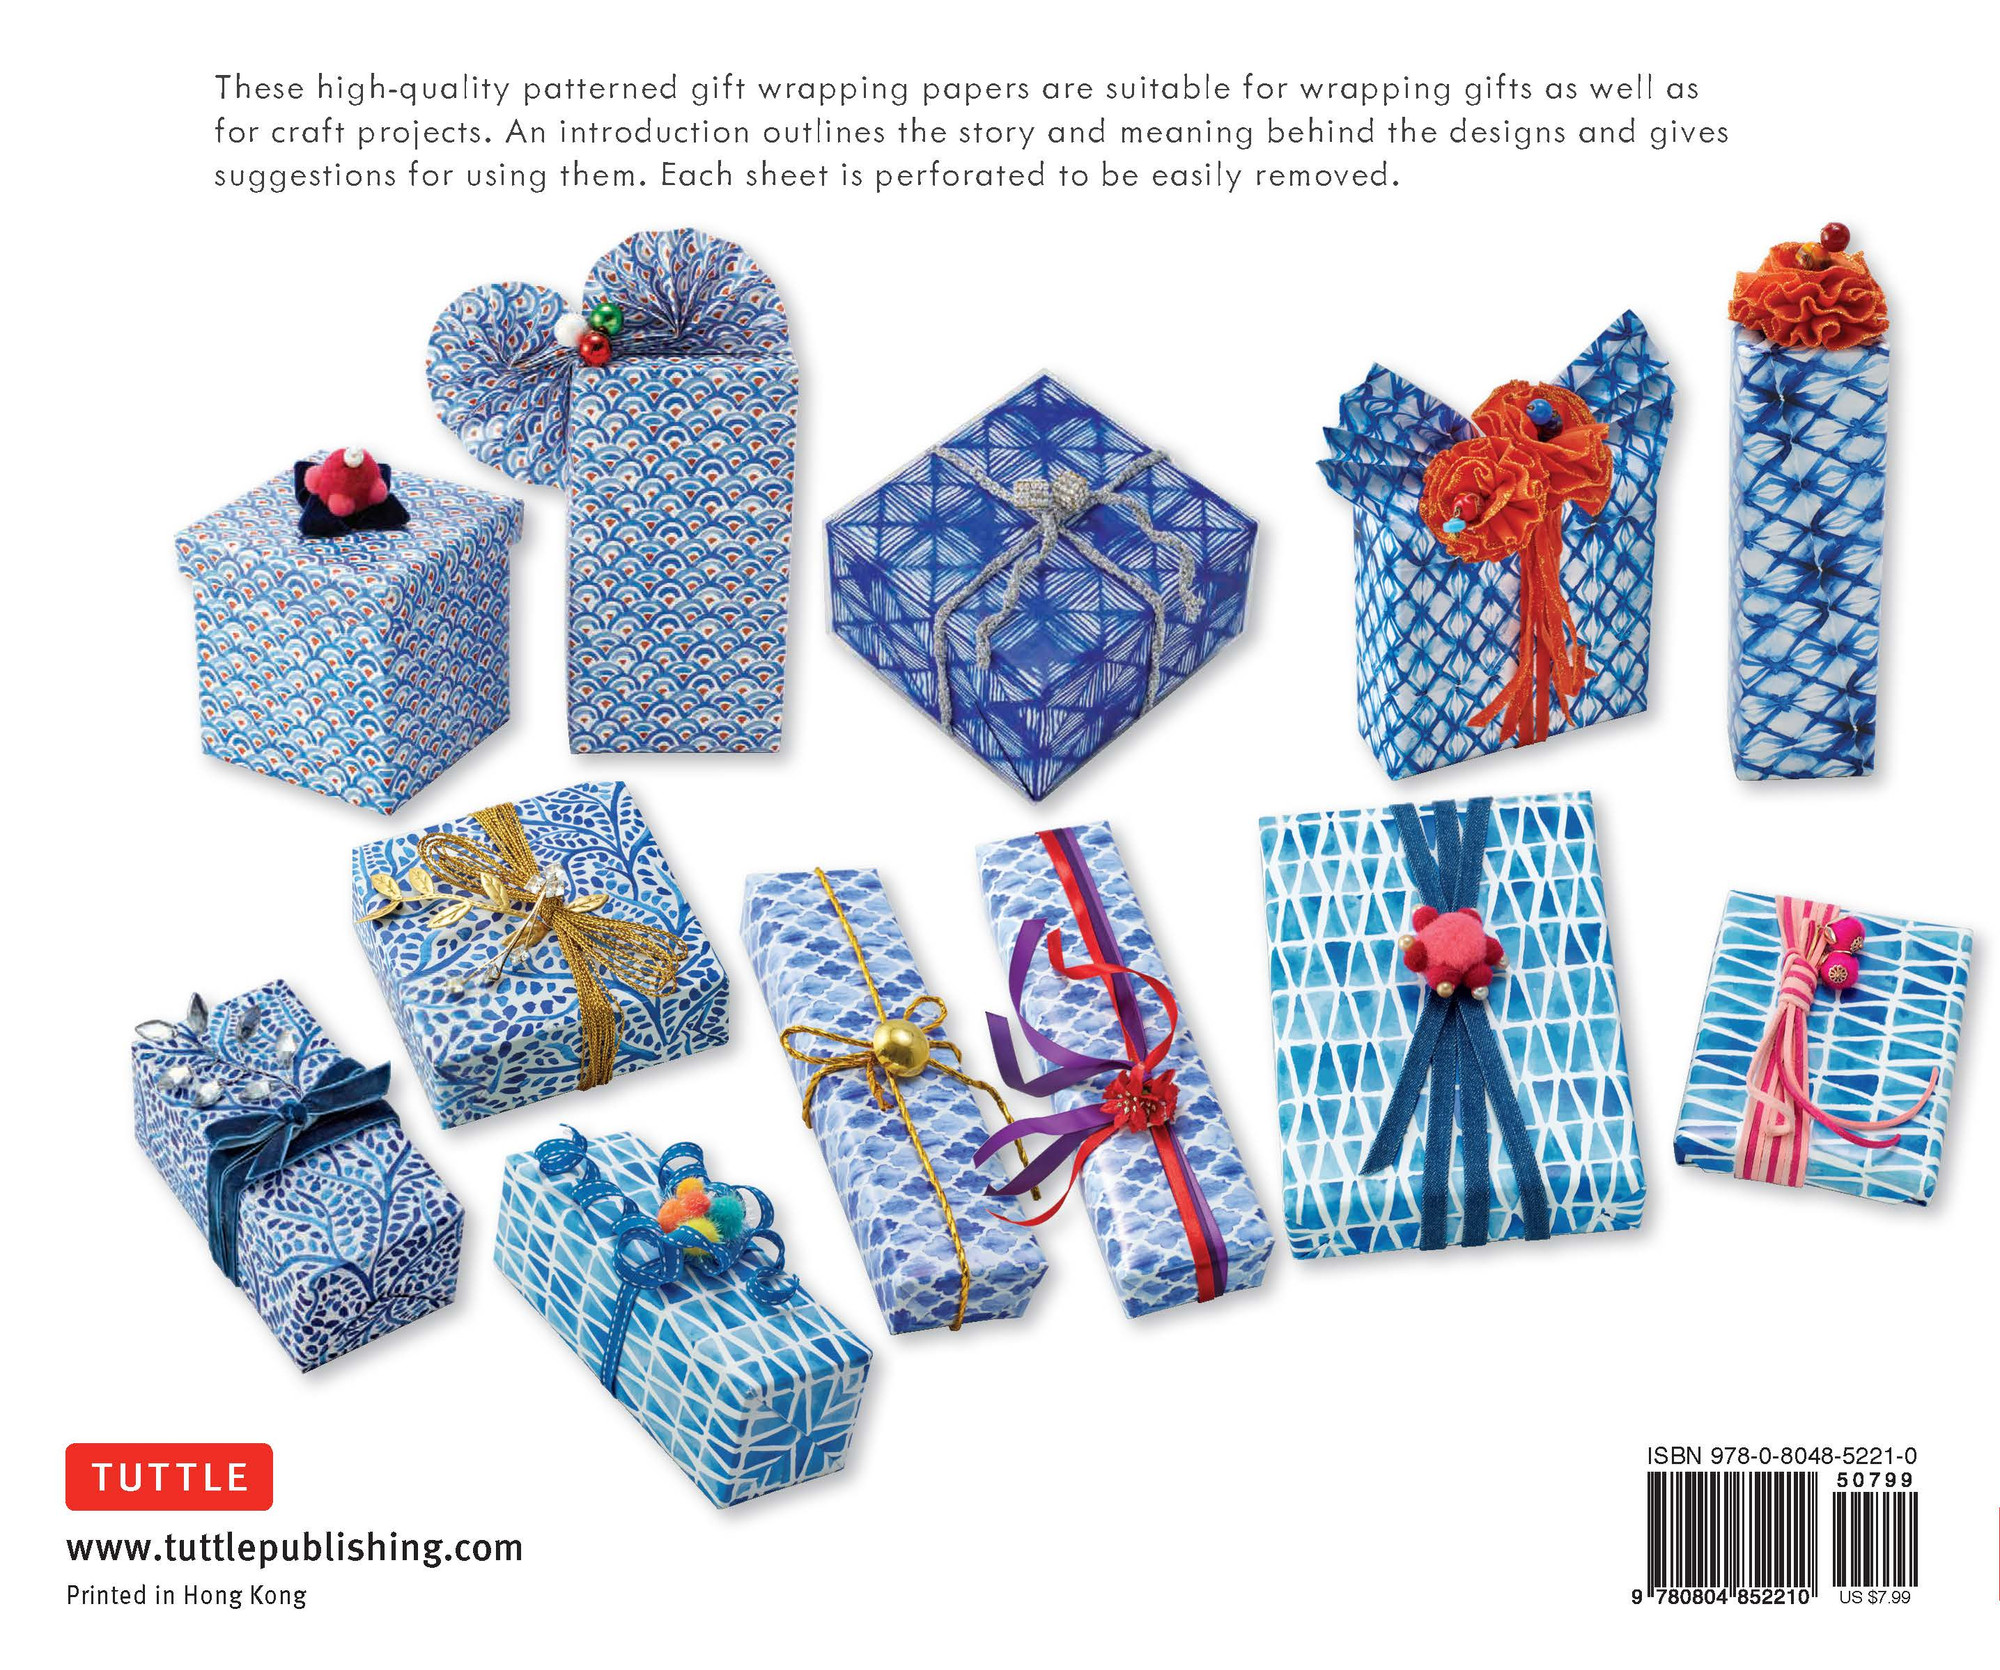 Copper Wrapping Paper NEW  Emballer cadeau, Papier cadeau original,  Décoration de noël bleue